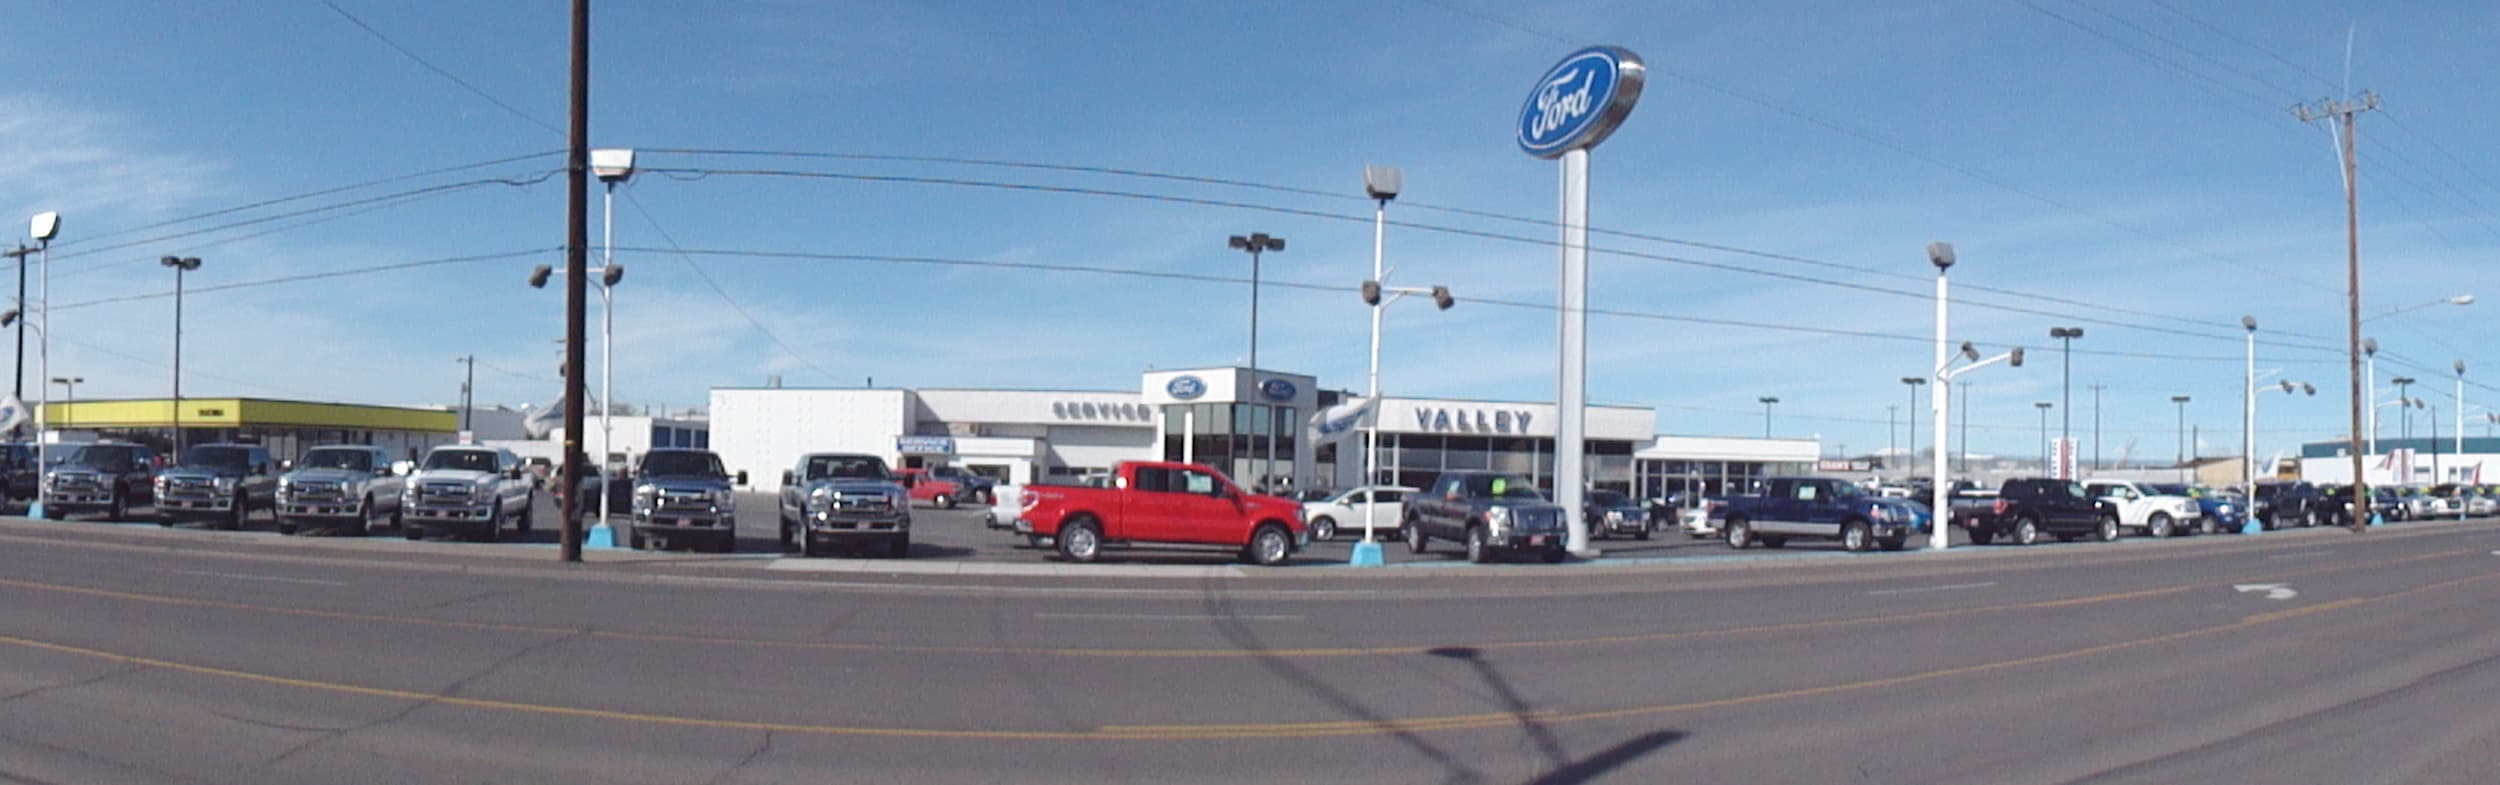 Ford dealership in yakima washington #6